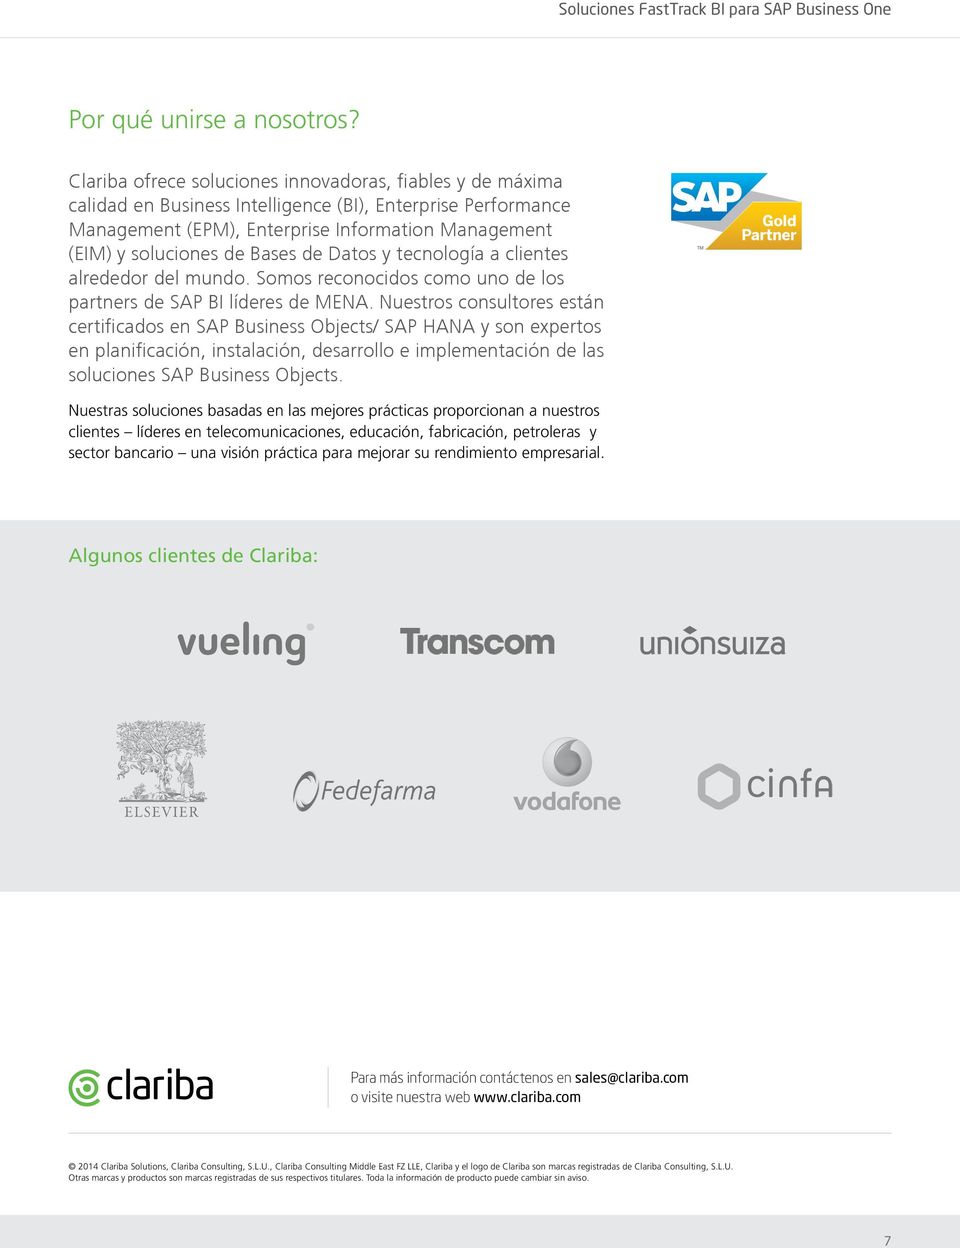 Bases de Datos y tecnología a clientes alrededor del mundo. Somos reconocidos como uno de los partners de SAP BI líderes de MENA.